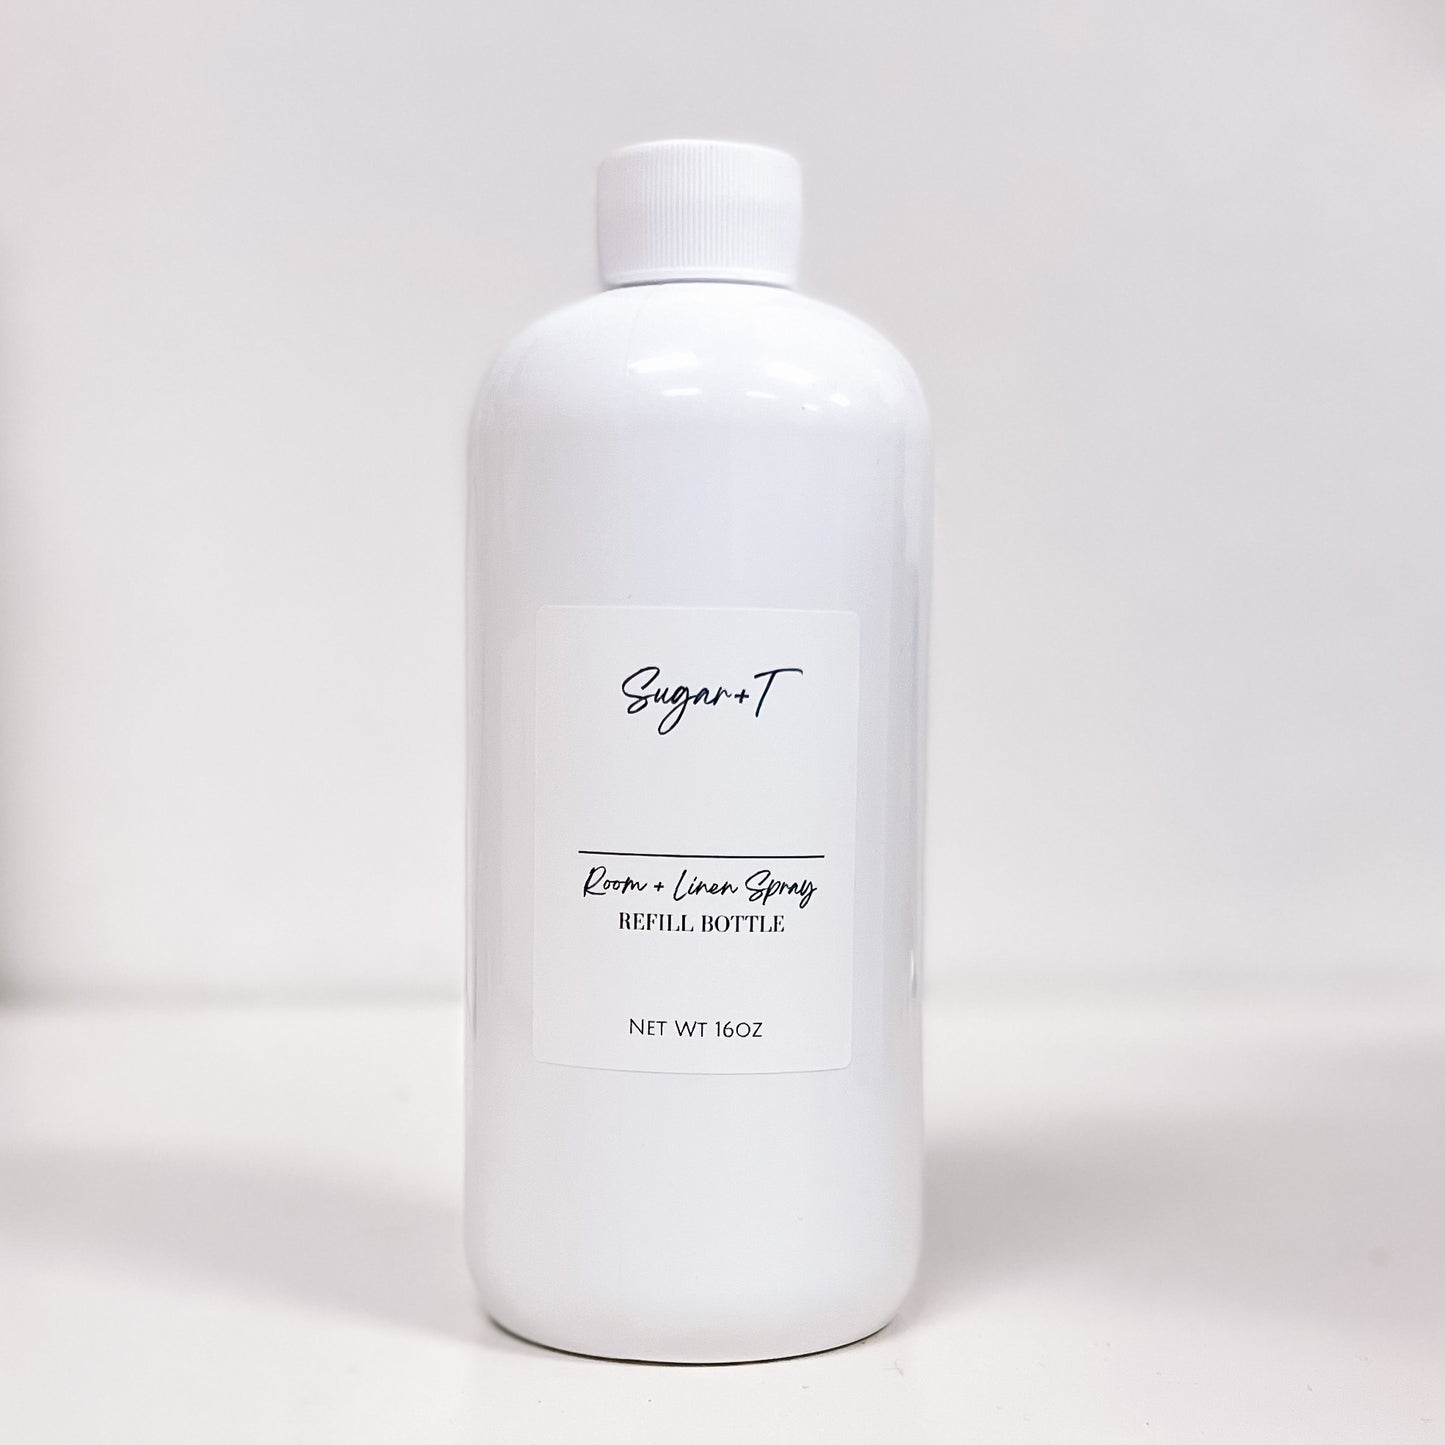 Room + Linen Spray Refill Bottle